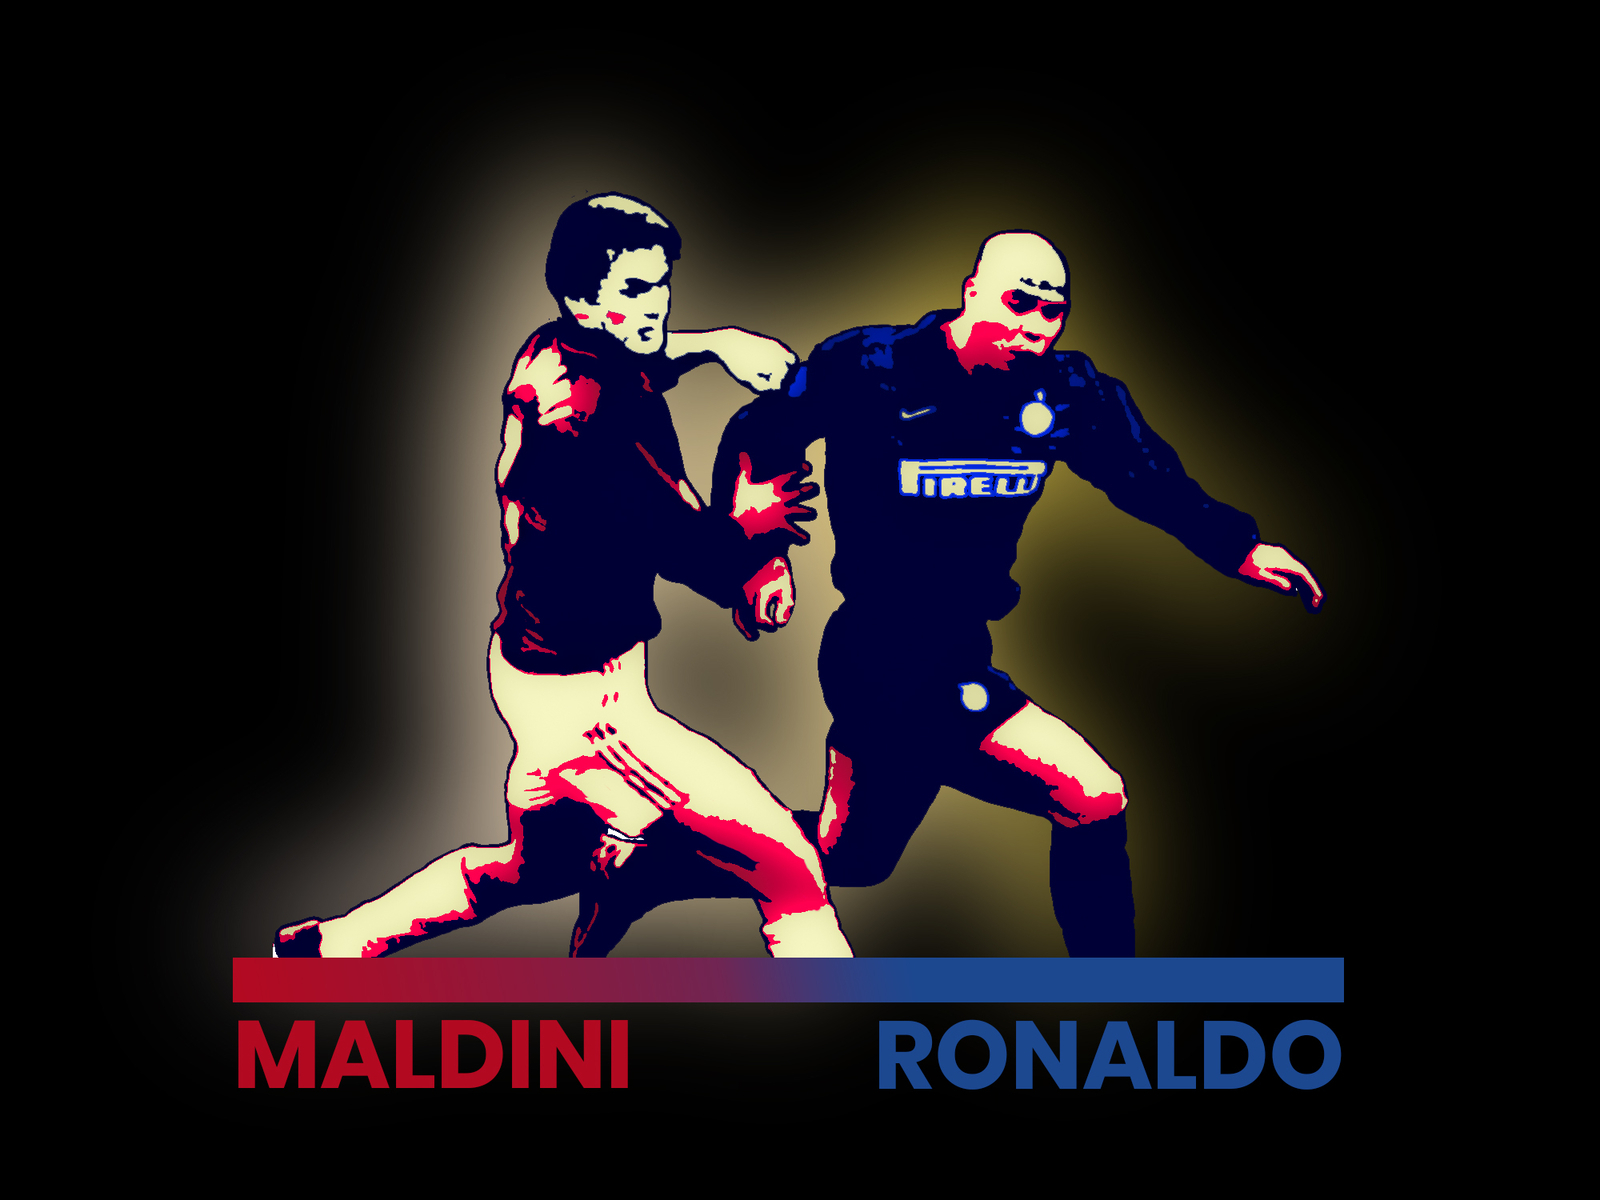 Maldini Vs Ronaldo football graphic design illustration inter maldini milan ronaldo